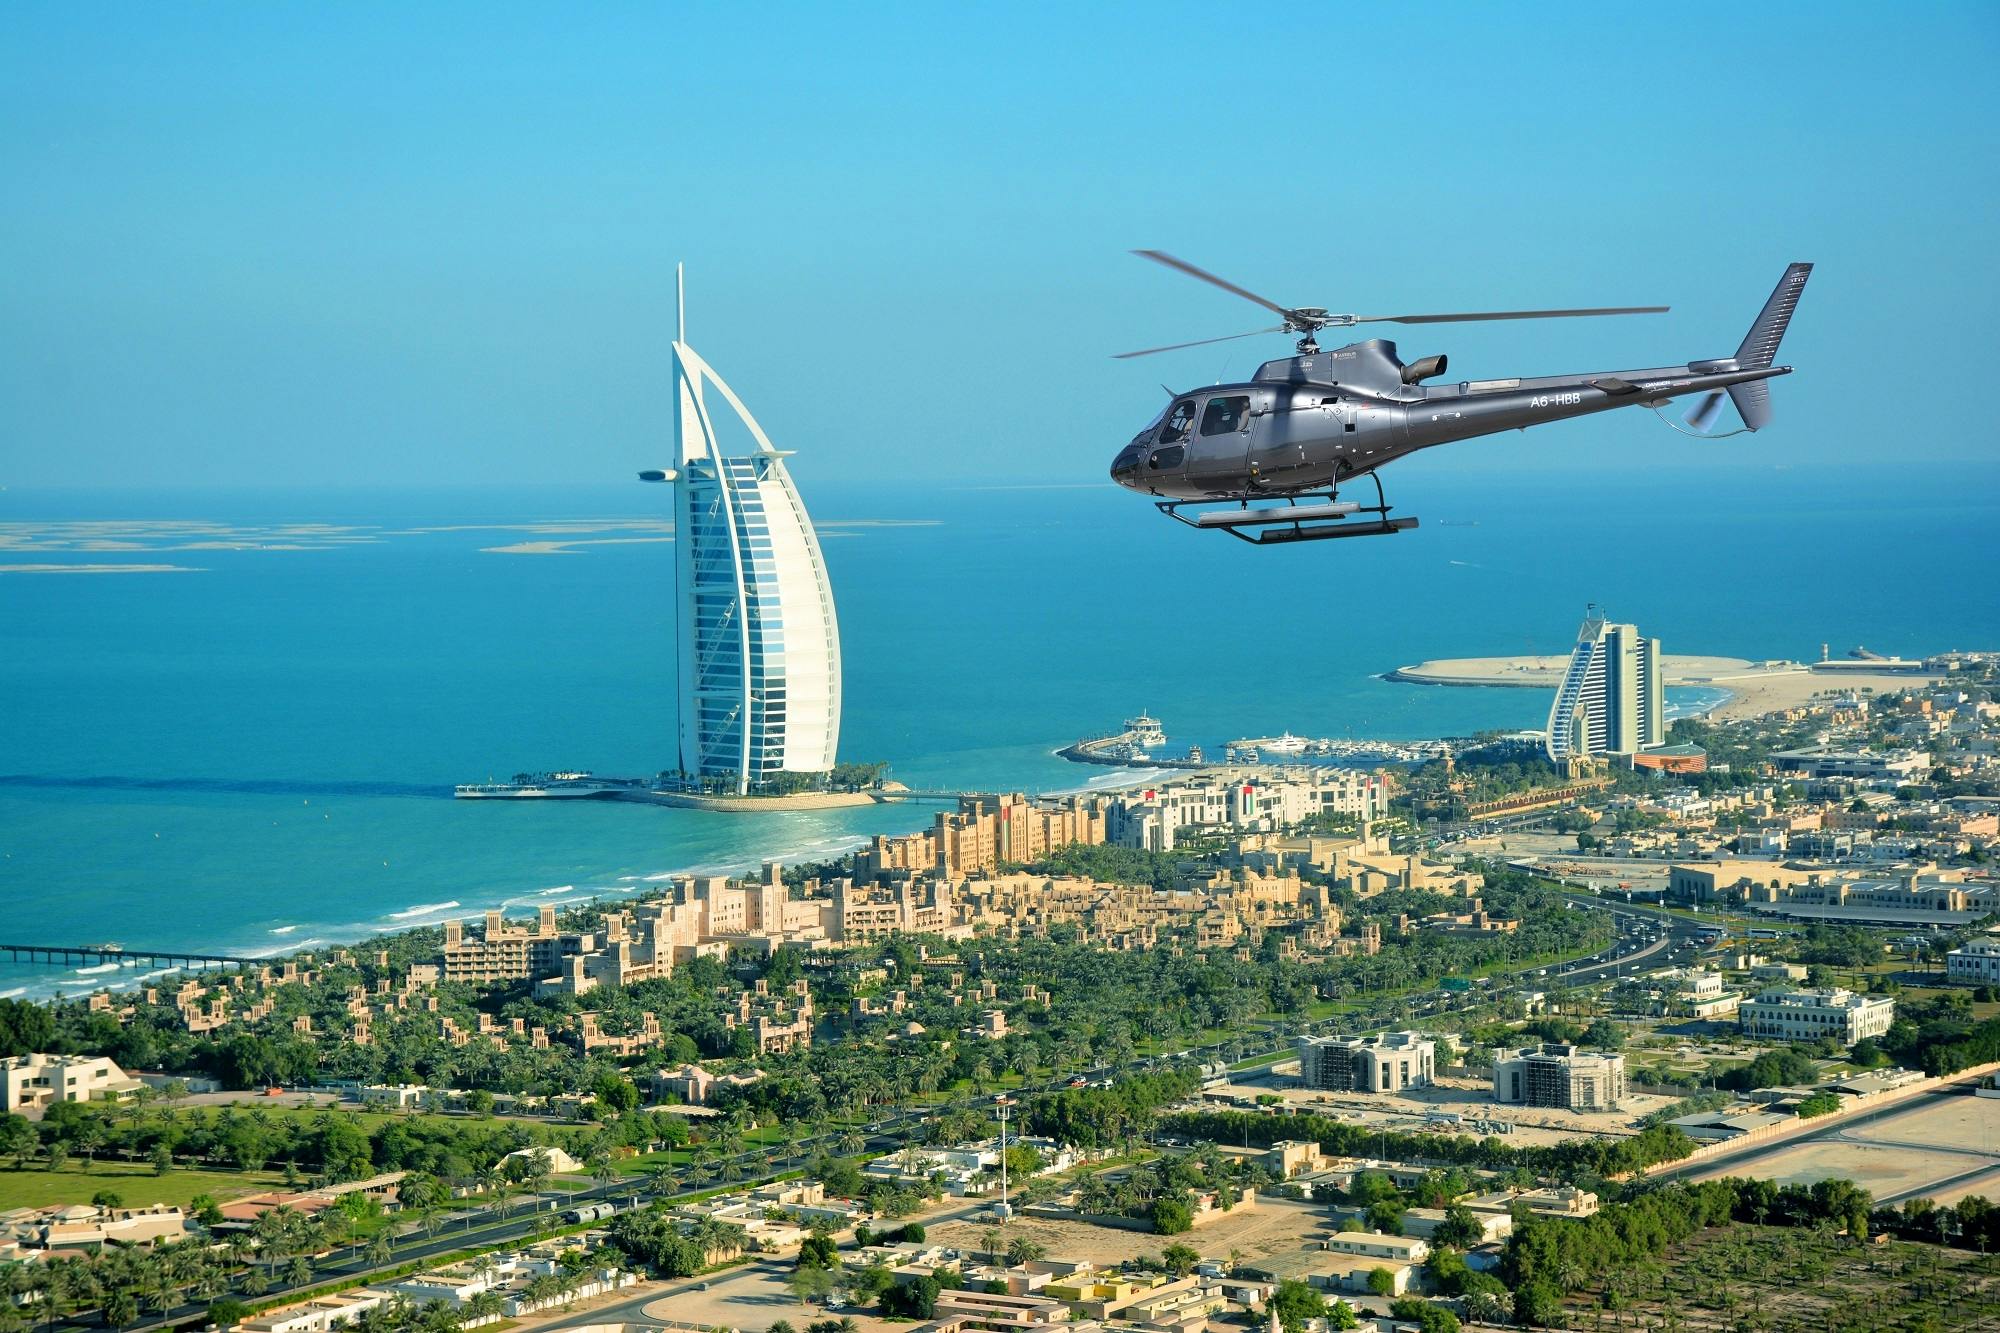 Vol en hélicoptère de 17 minutes au-dessus de Dubaï